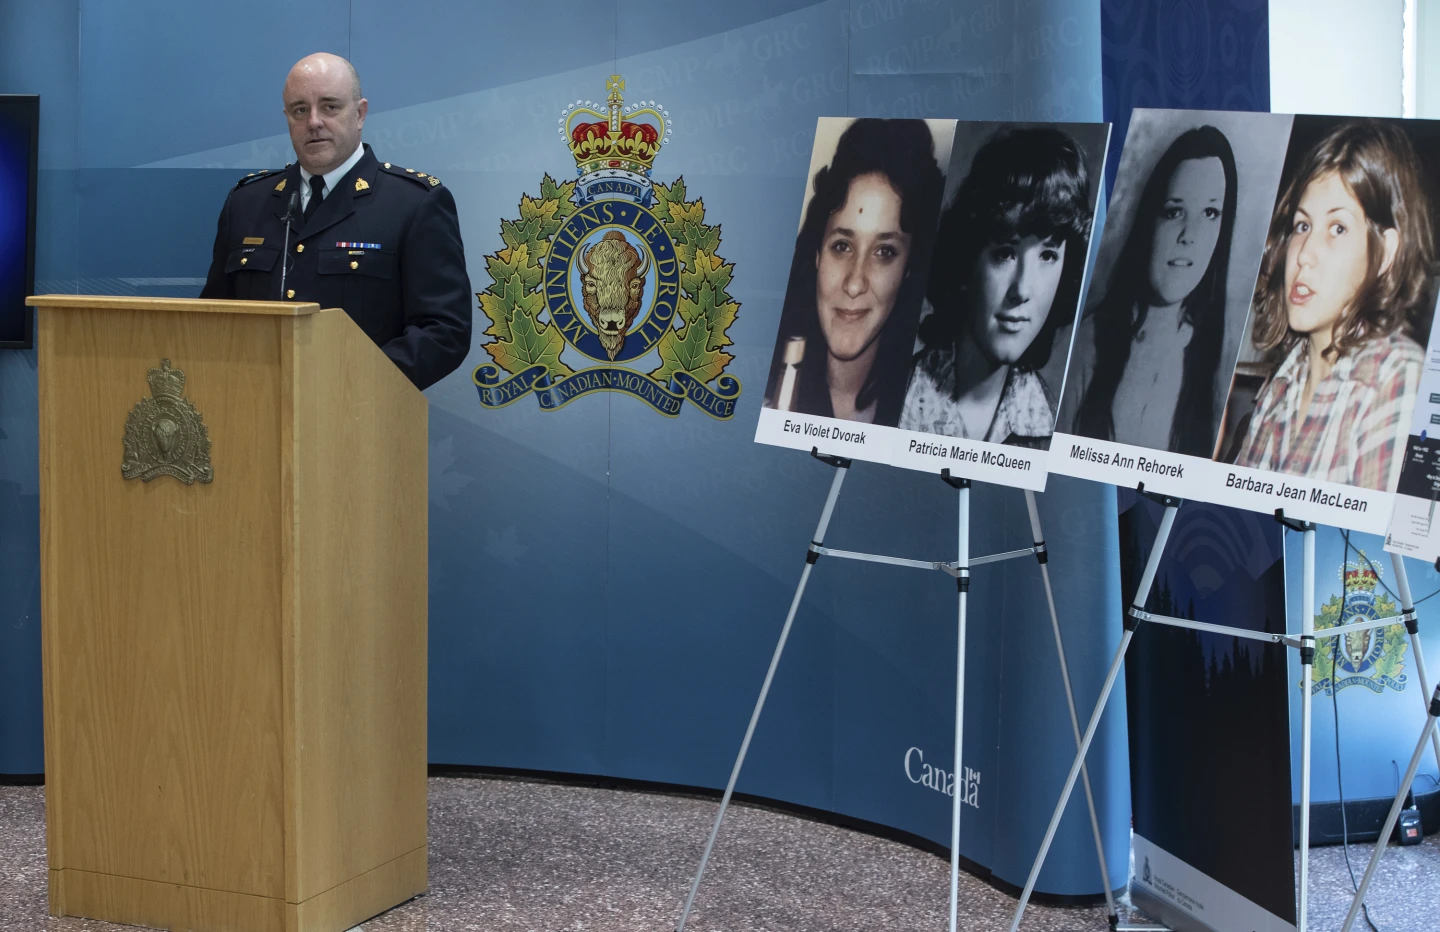 La policía canadiense anunció el viernes que ha vinculado la muerte de cuatro mujeres jóvenes hace casi 50 años con un fugitivo estadounidense ahora fallecido que se escondió en Canadá desde mediados de los años 1970 hasta finales de los 1990.